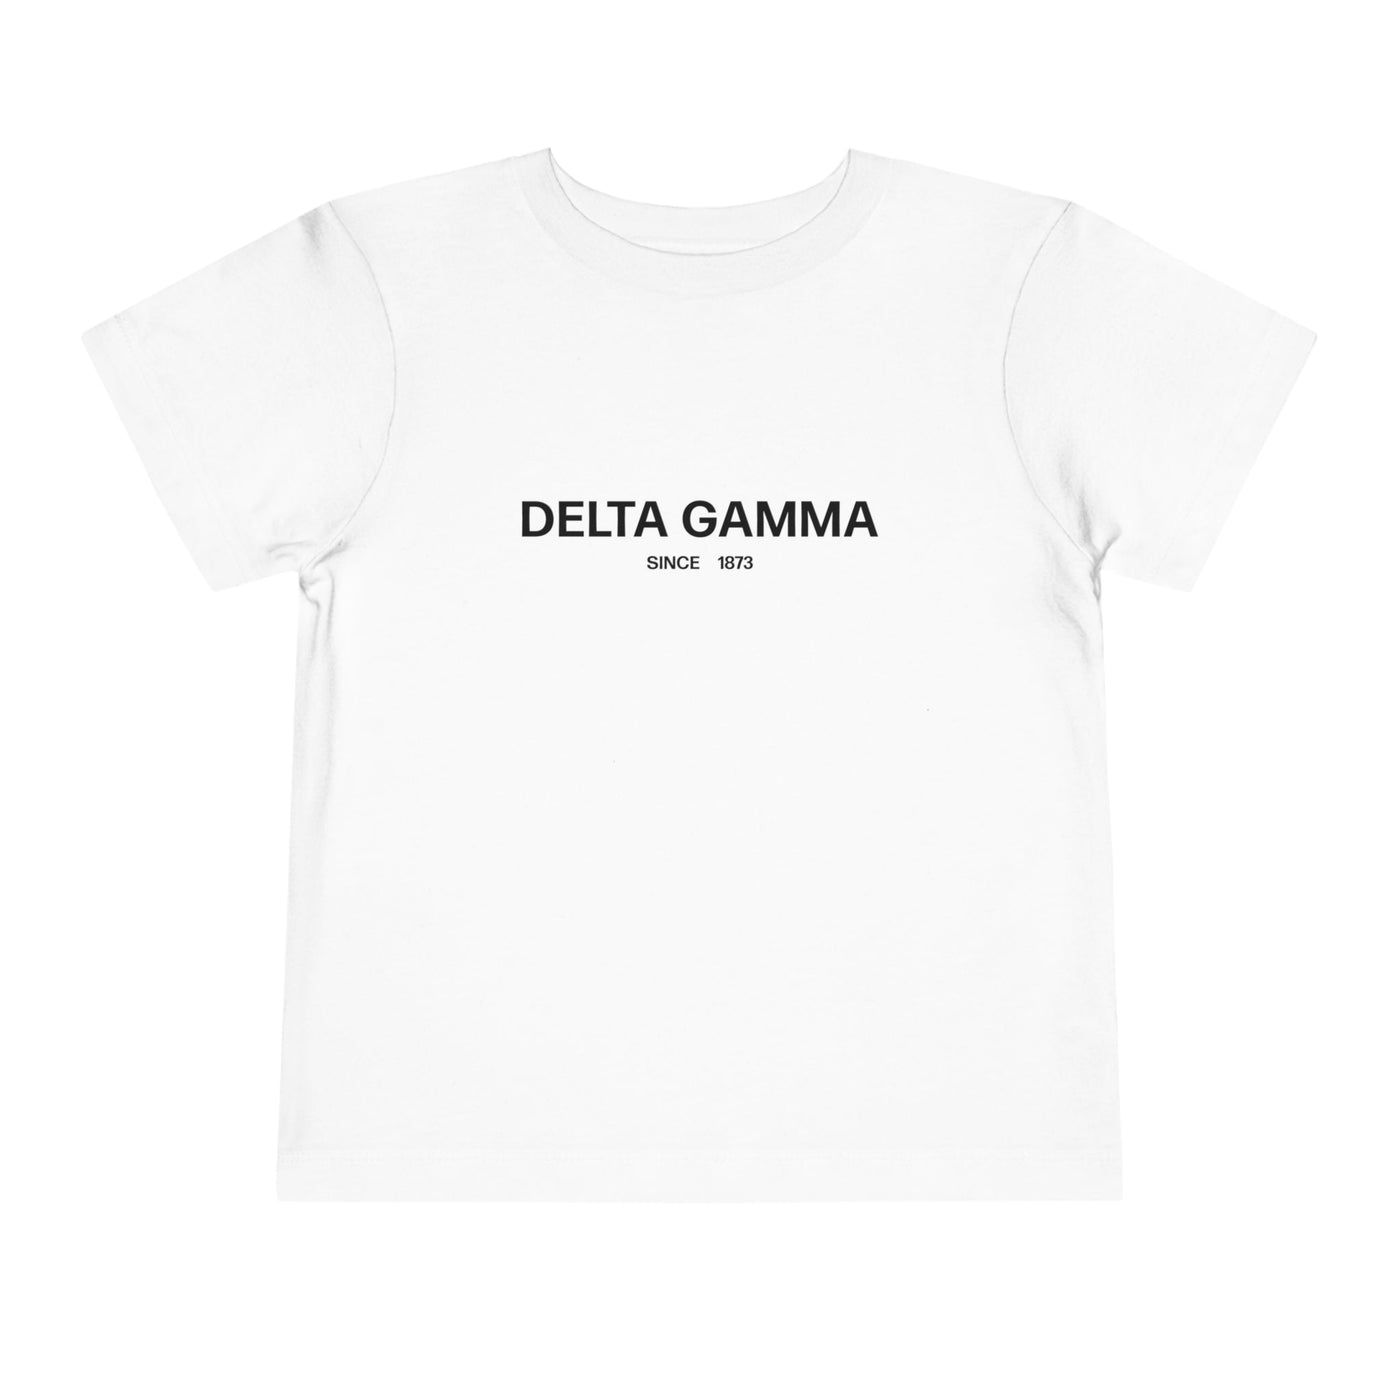 Delta Gamma Sorority Baby Tee Crop Top